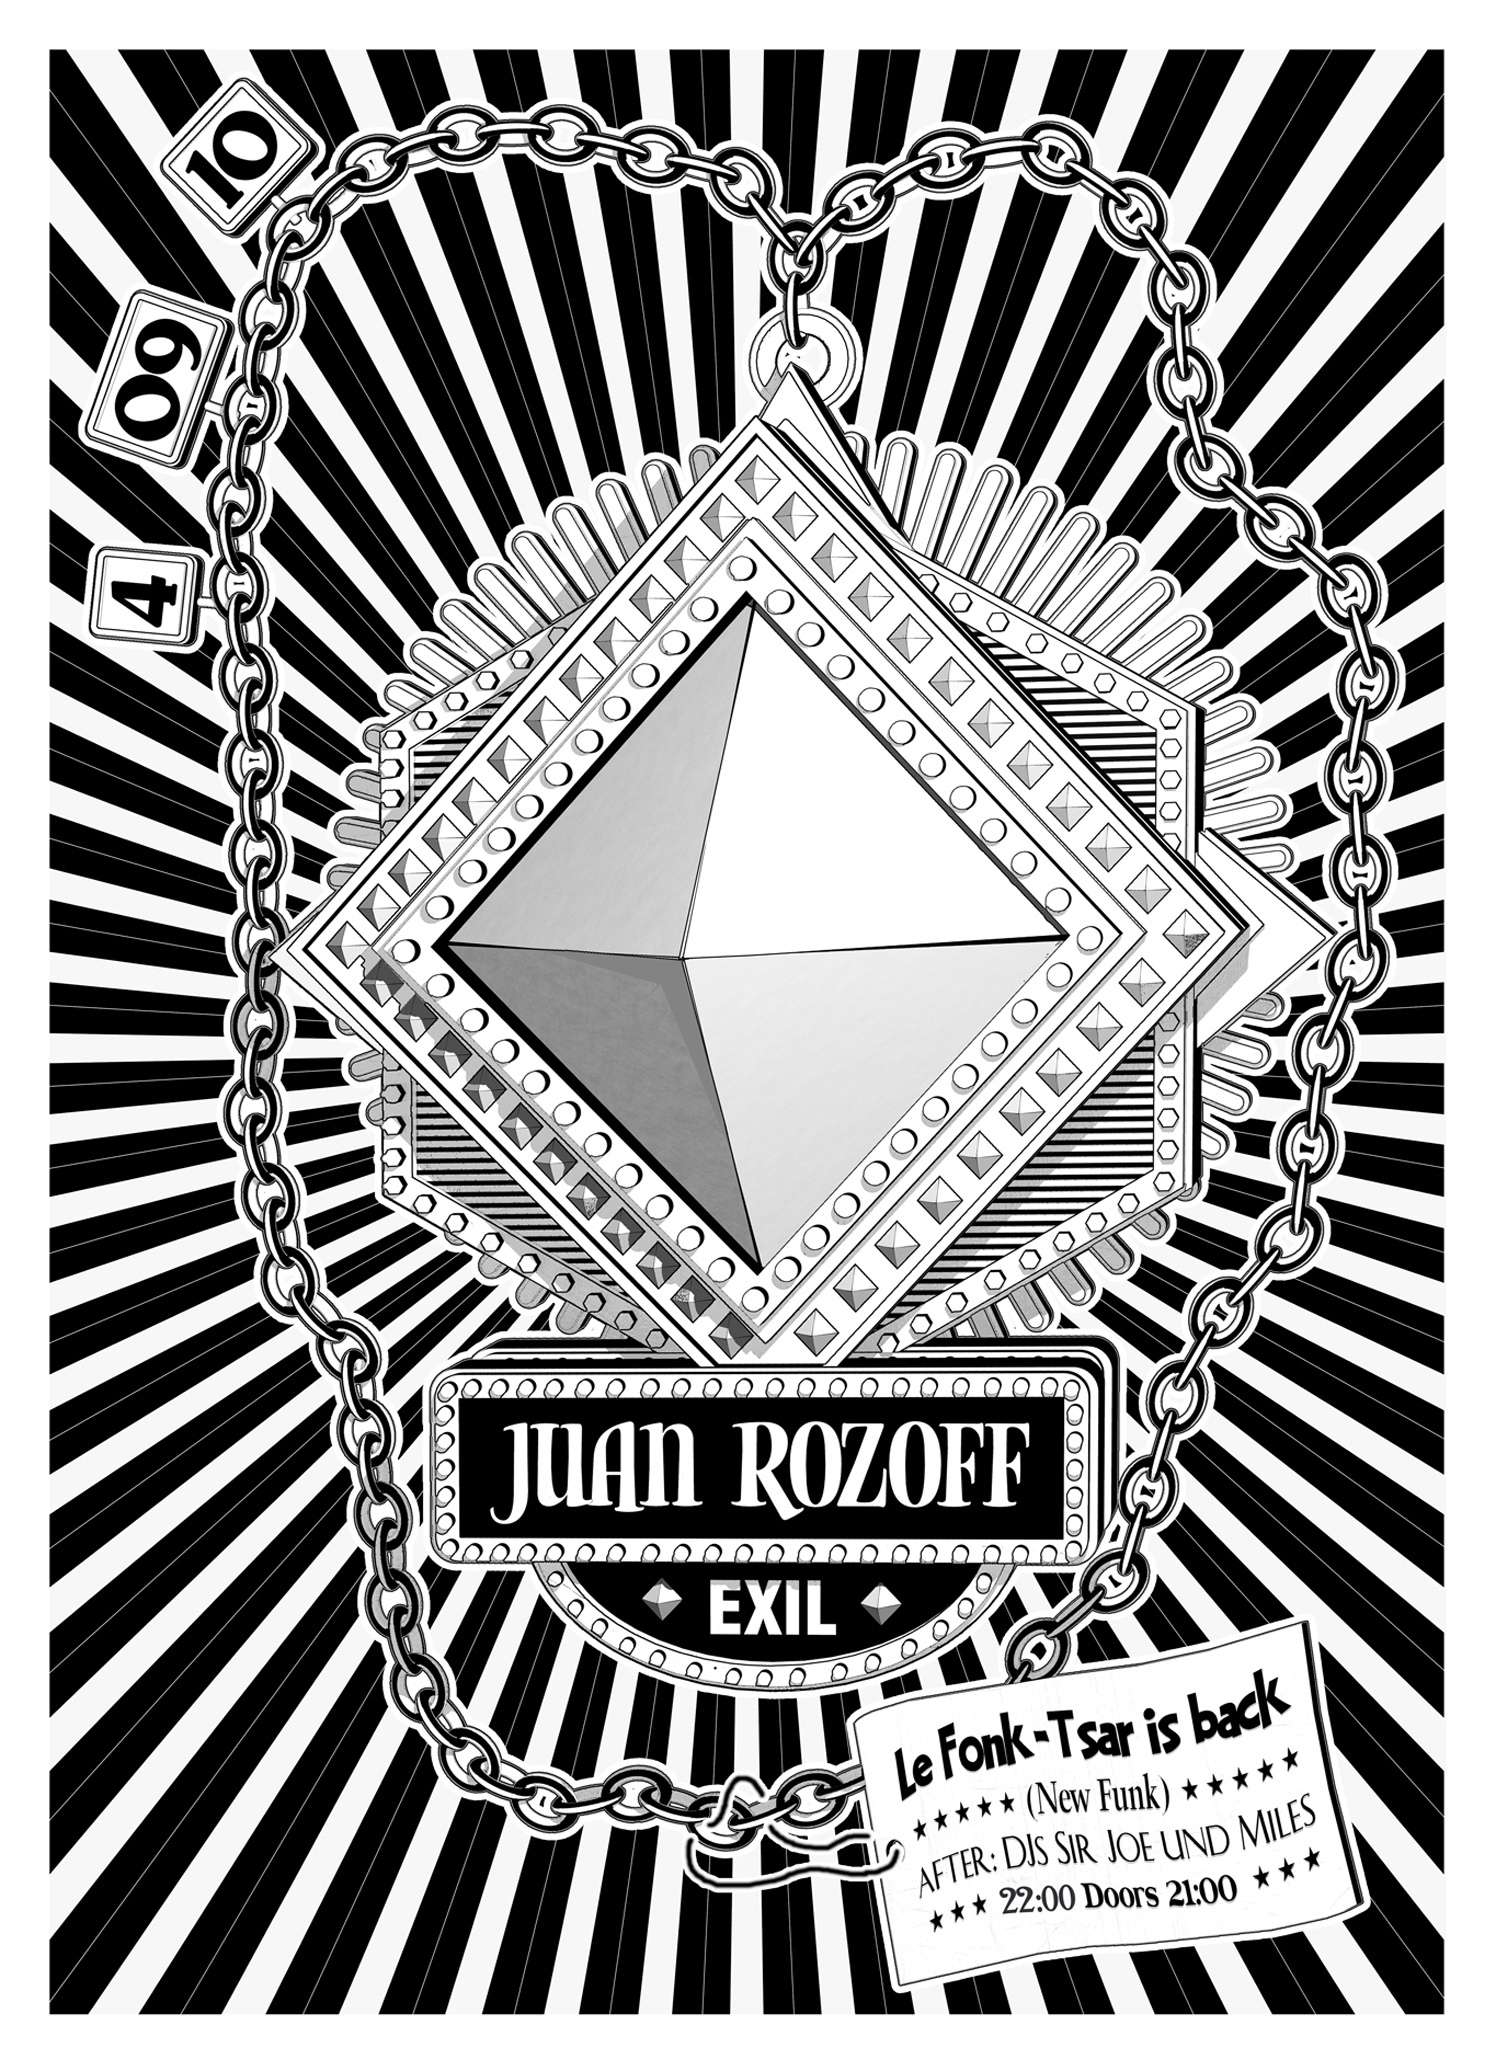 Juan Rozoff Music Poster Exil Zurich